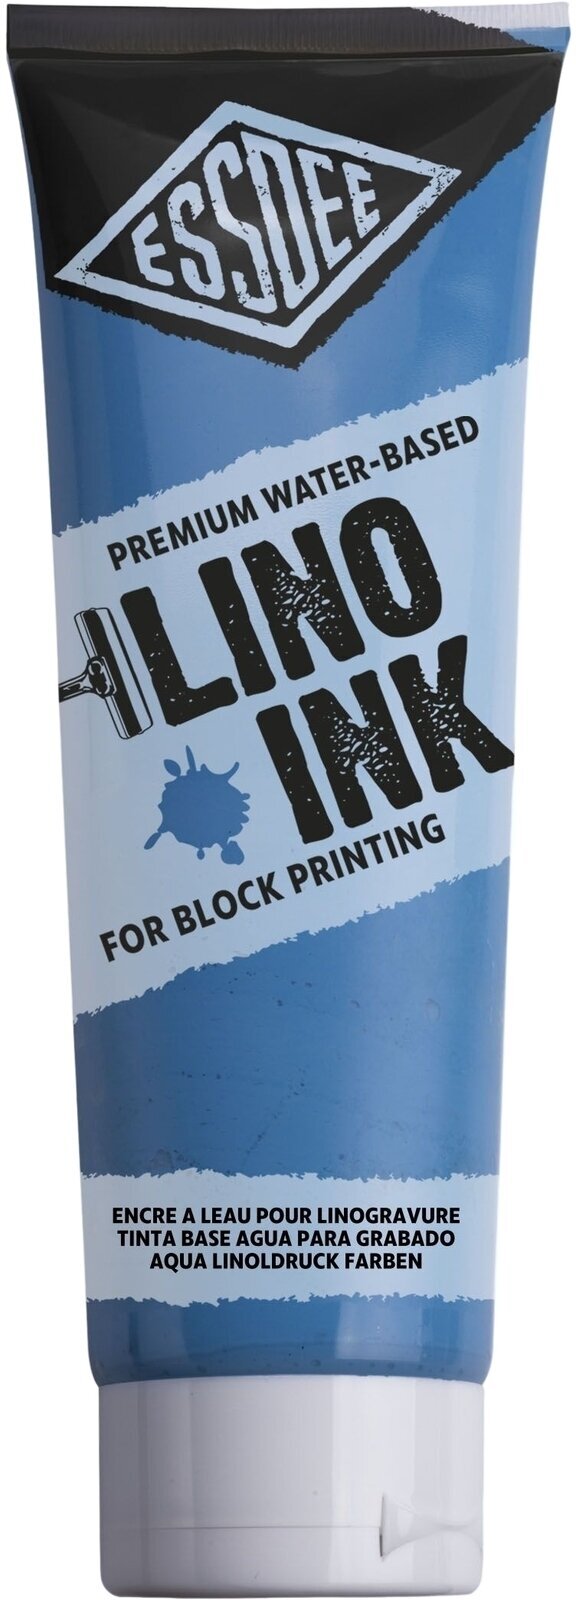 Pintura para linograbado Essdee Block Printing Ink Pintura para linograbado Fluorescent Blue 300 ml